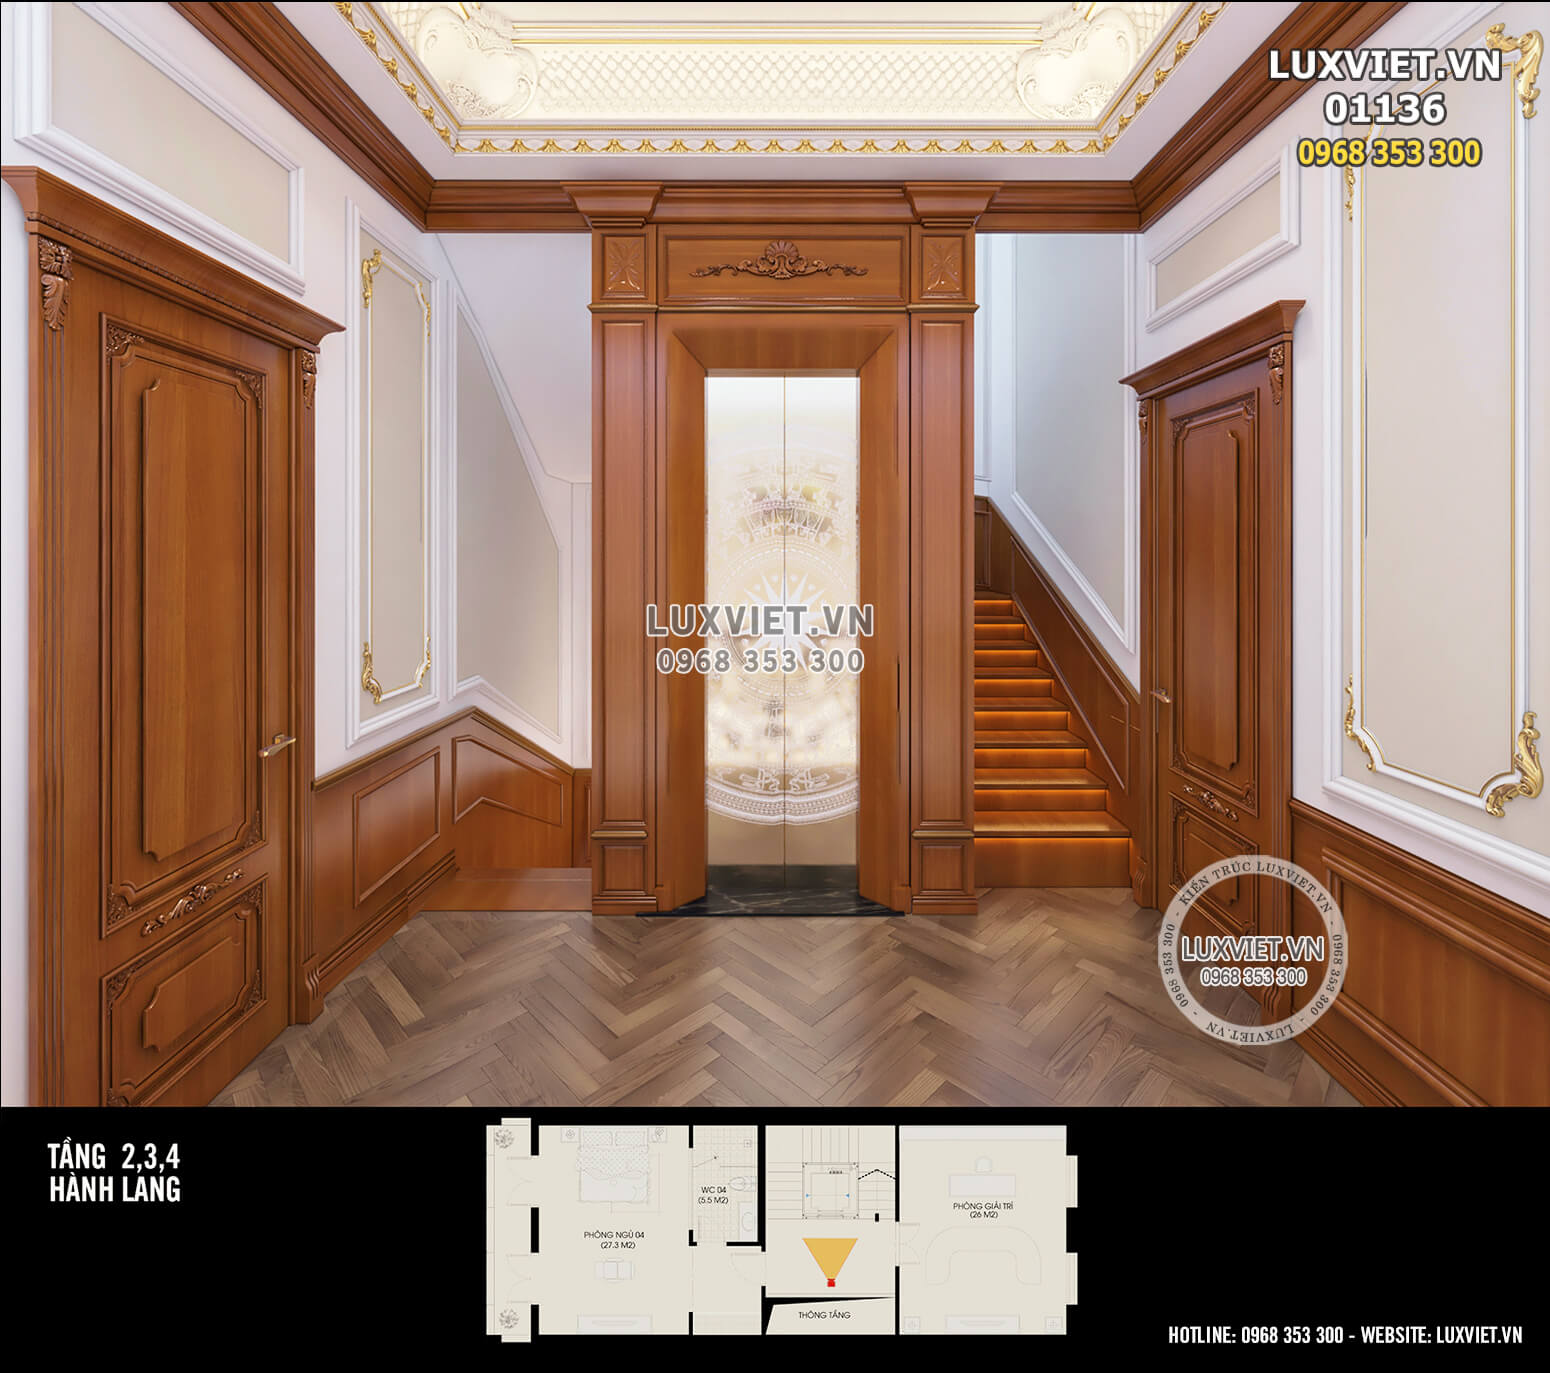 Thiết kế nội thất tân cổ điển với diện hành lang tầng 2,3,4 bằng gỗ sang trọng